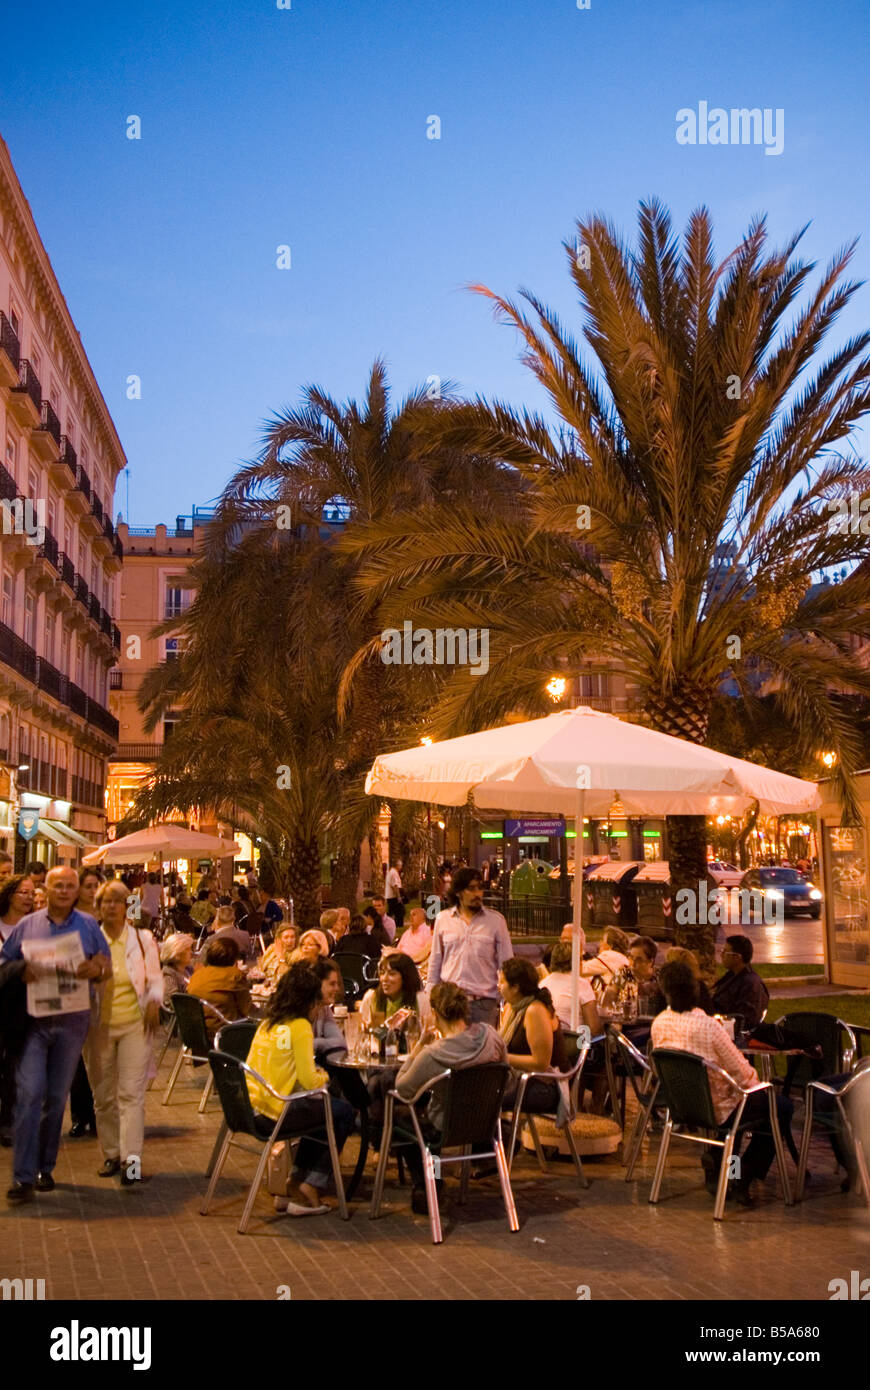 Gente sentada fuera de un bar animado, en la Plaza de la Reina en el centro histórico de la ciudad de El Carmen de Valencia España Foto de stock